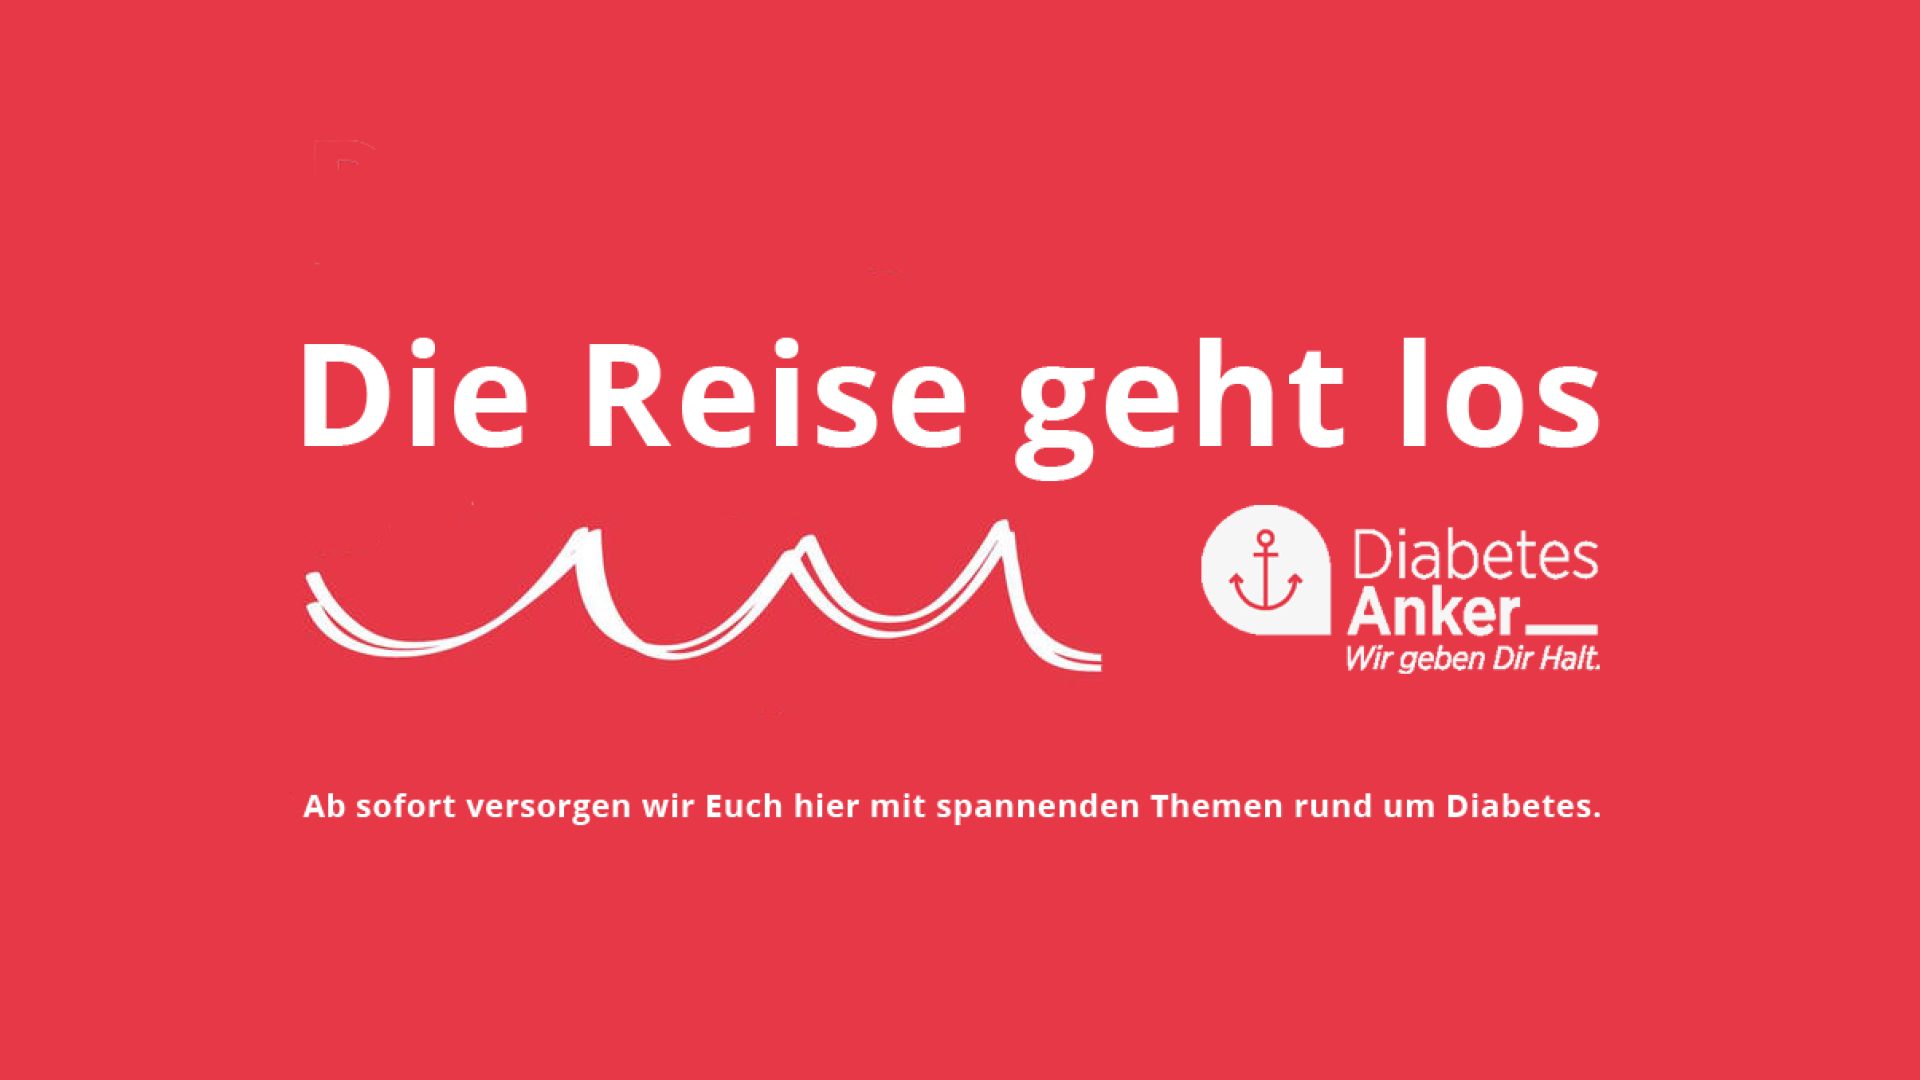 Diabetes-Anker – das neue online Portal für Menschen mit Diabetes